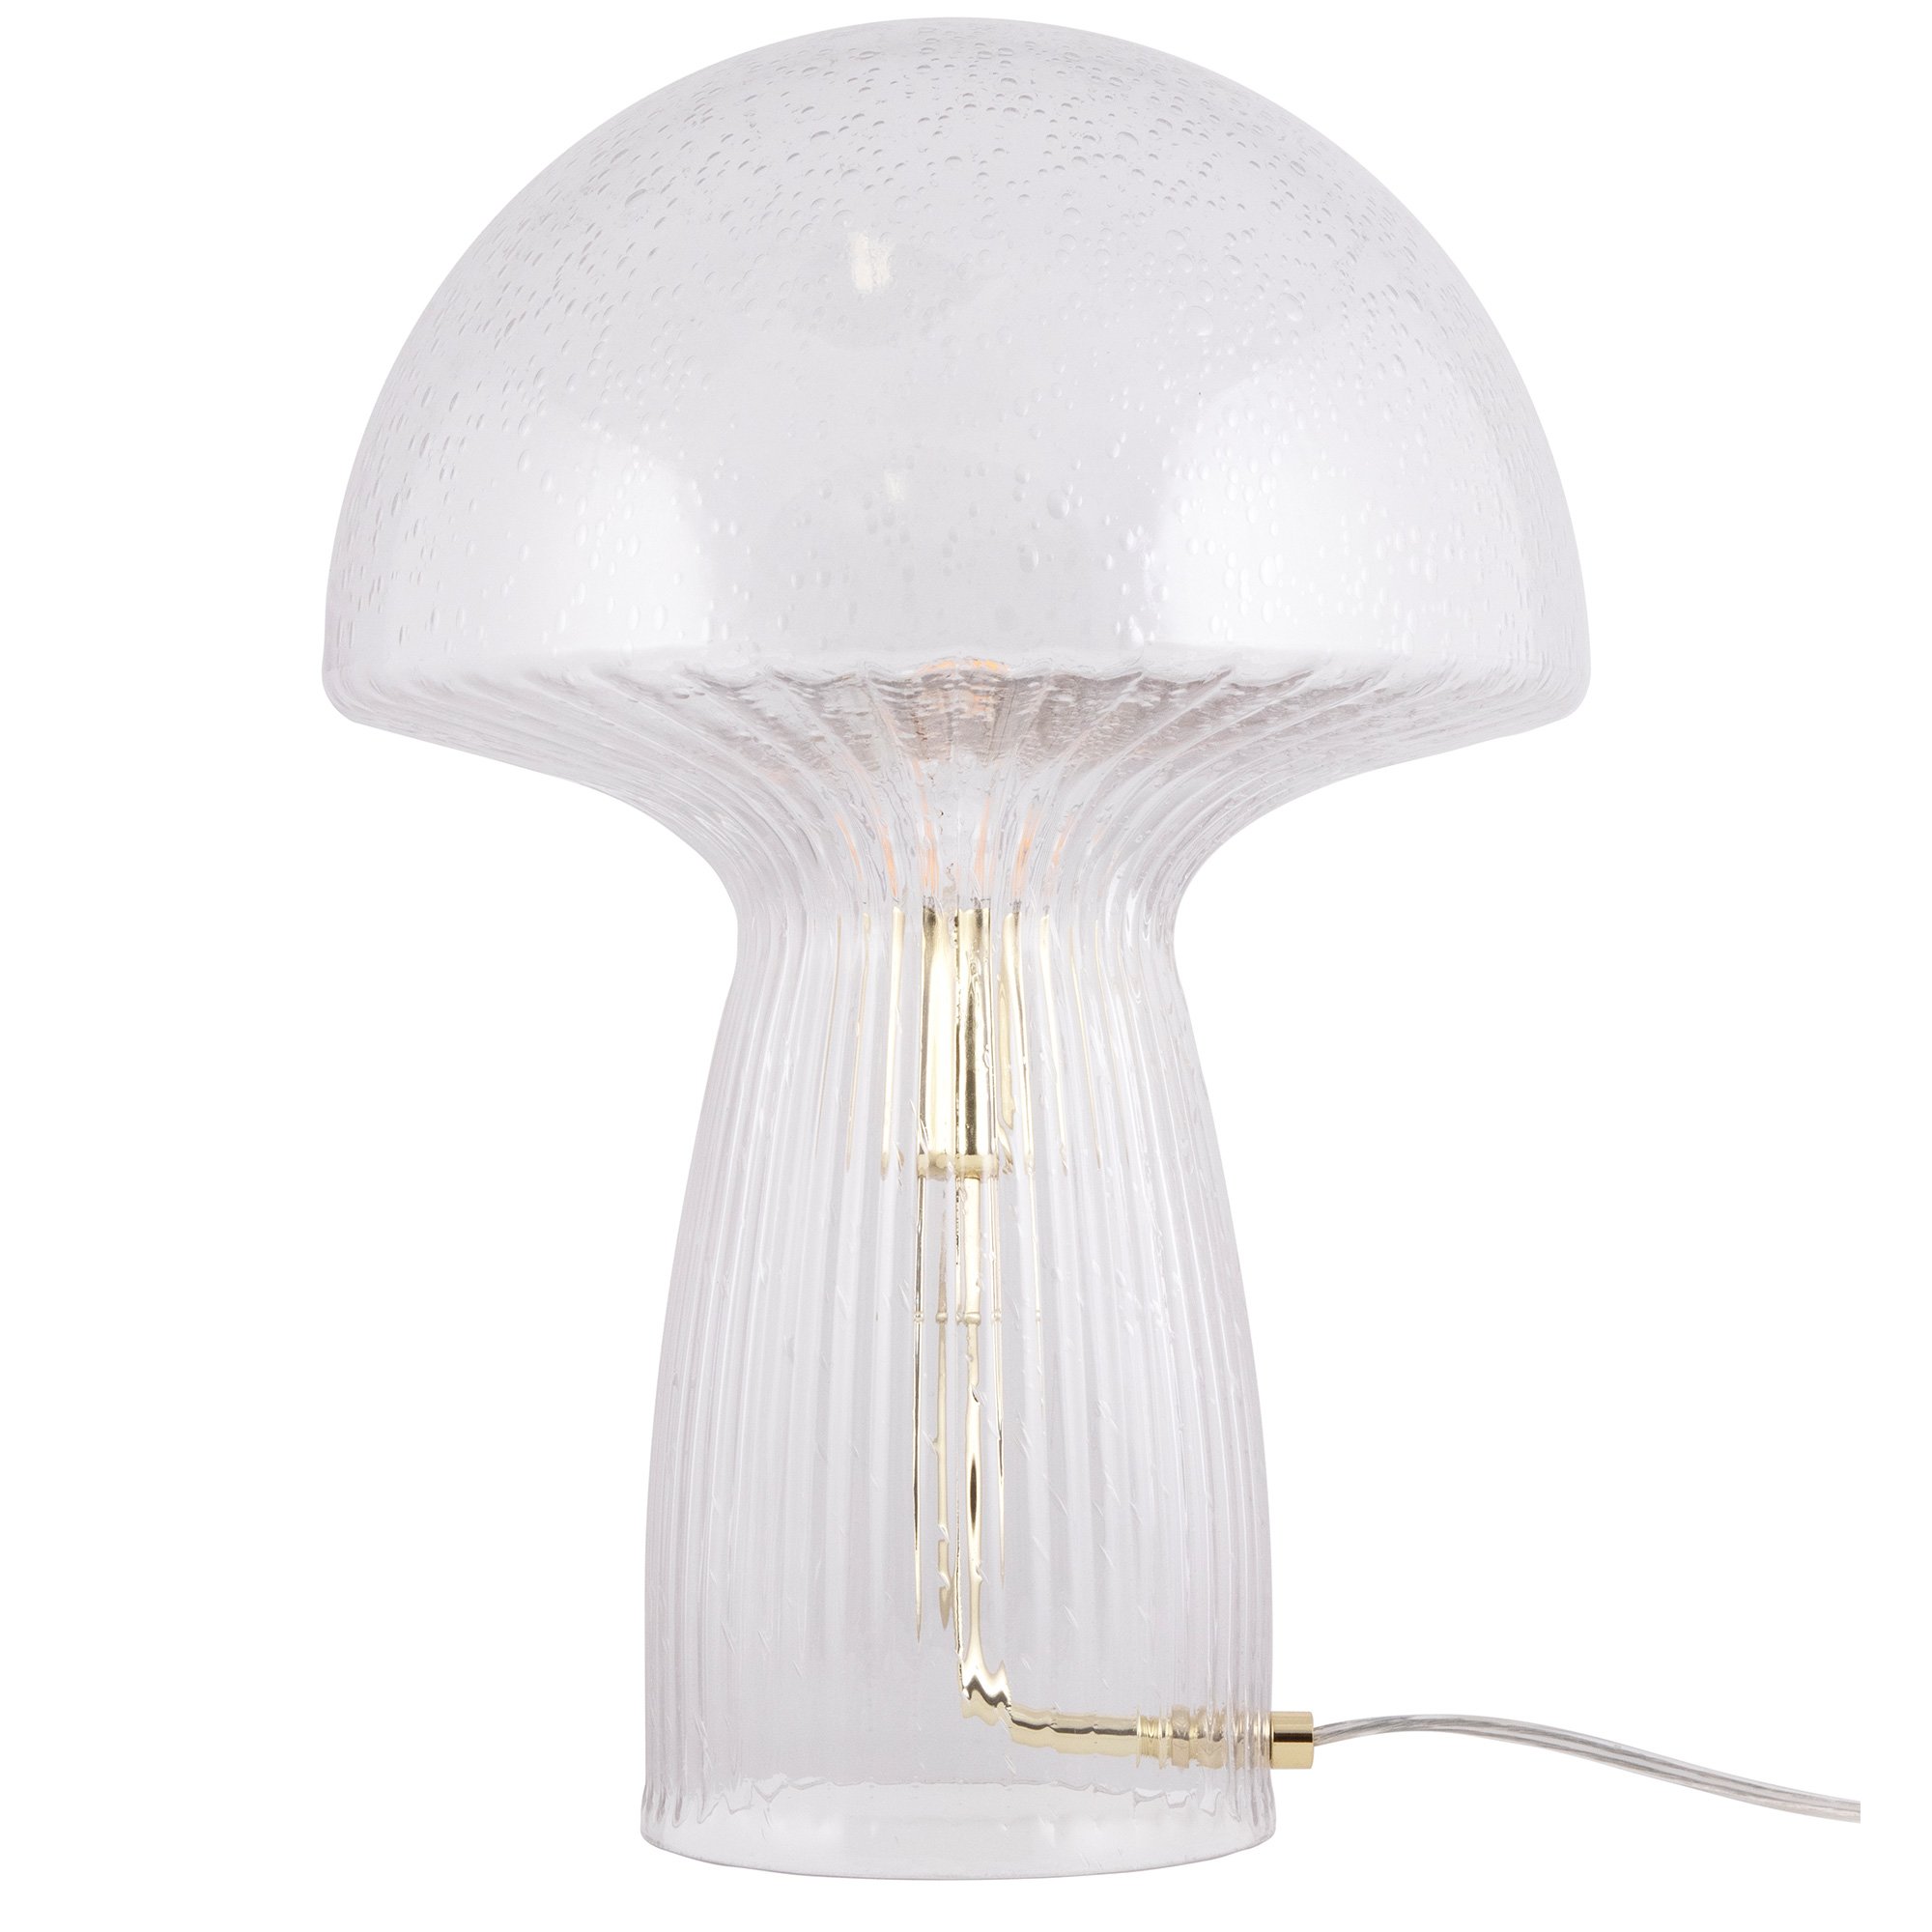 Globen Lighting Fungo Special Edition bordlampe klar, 30 cm Lampe